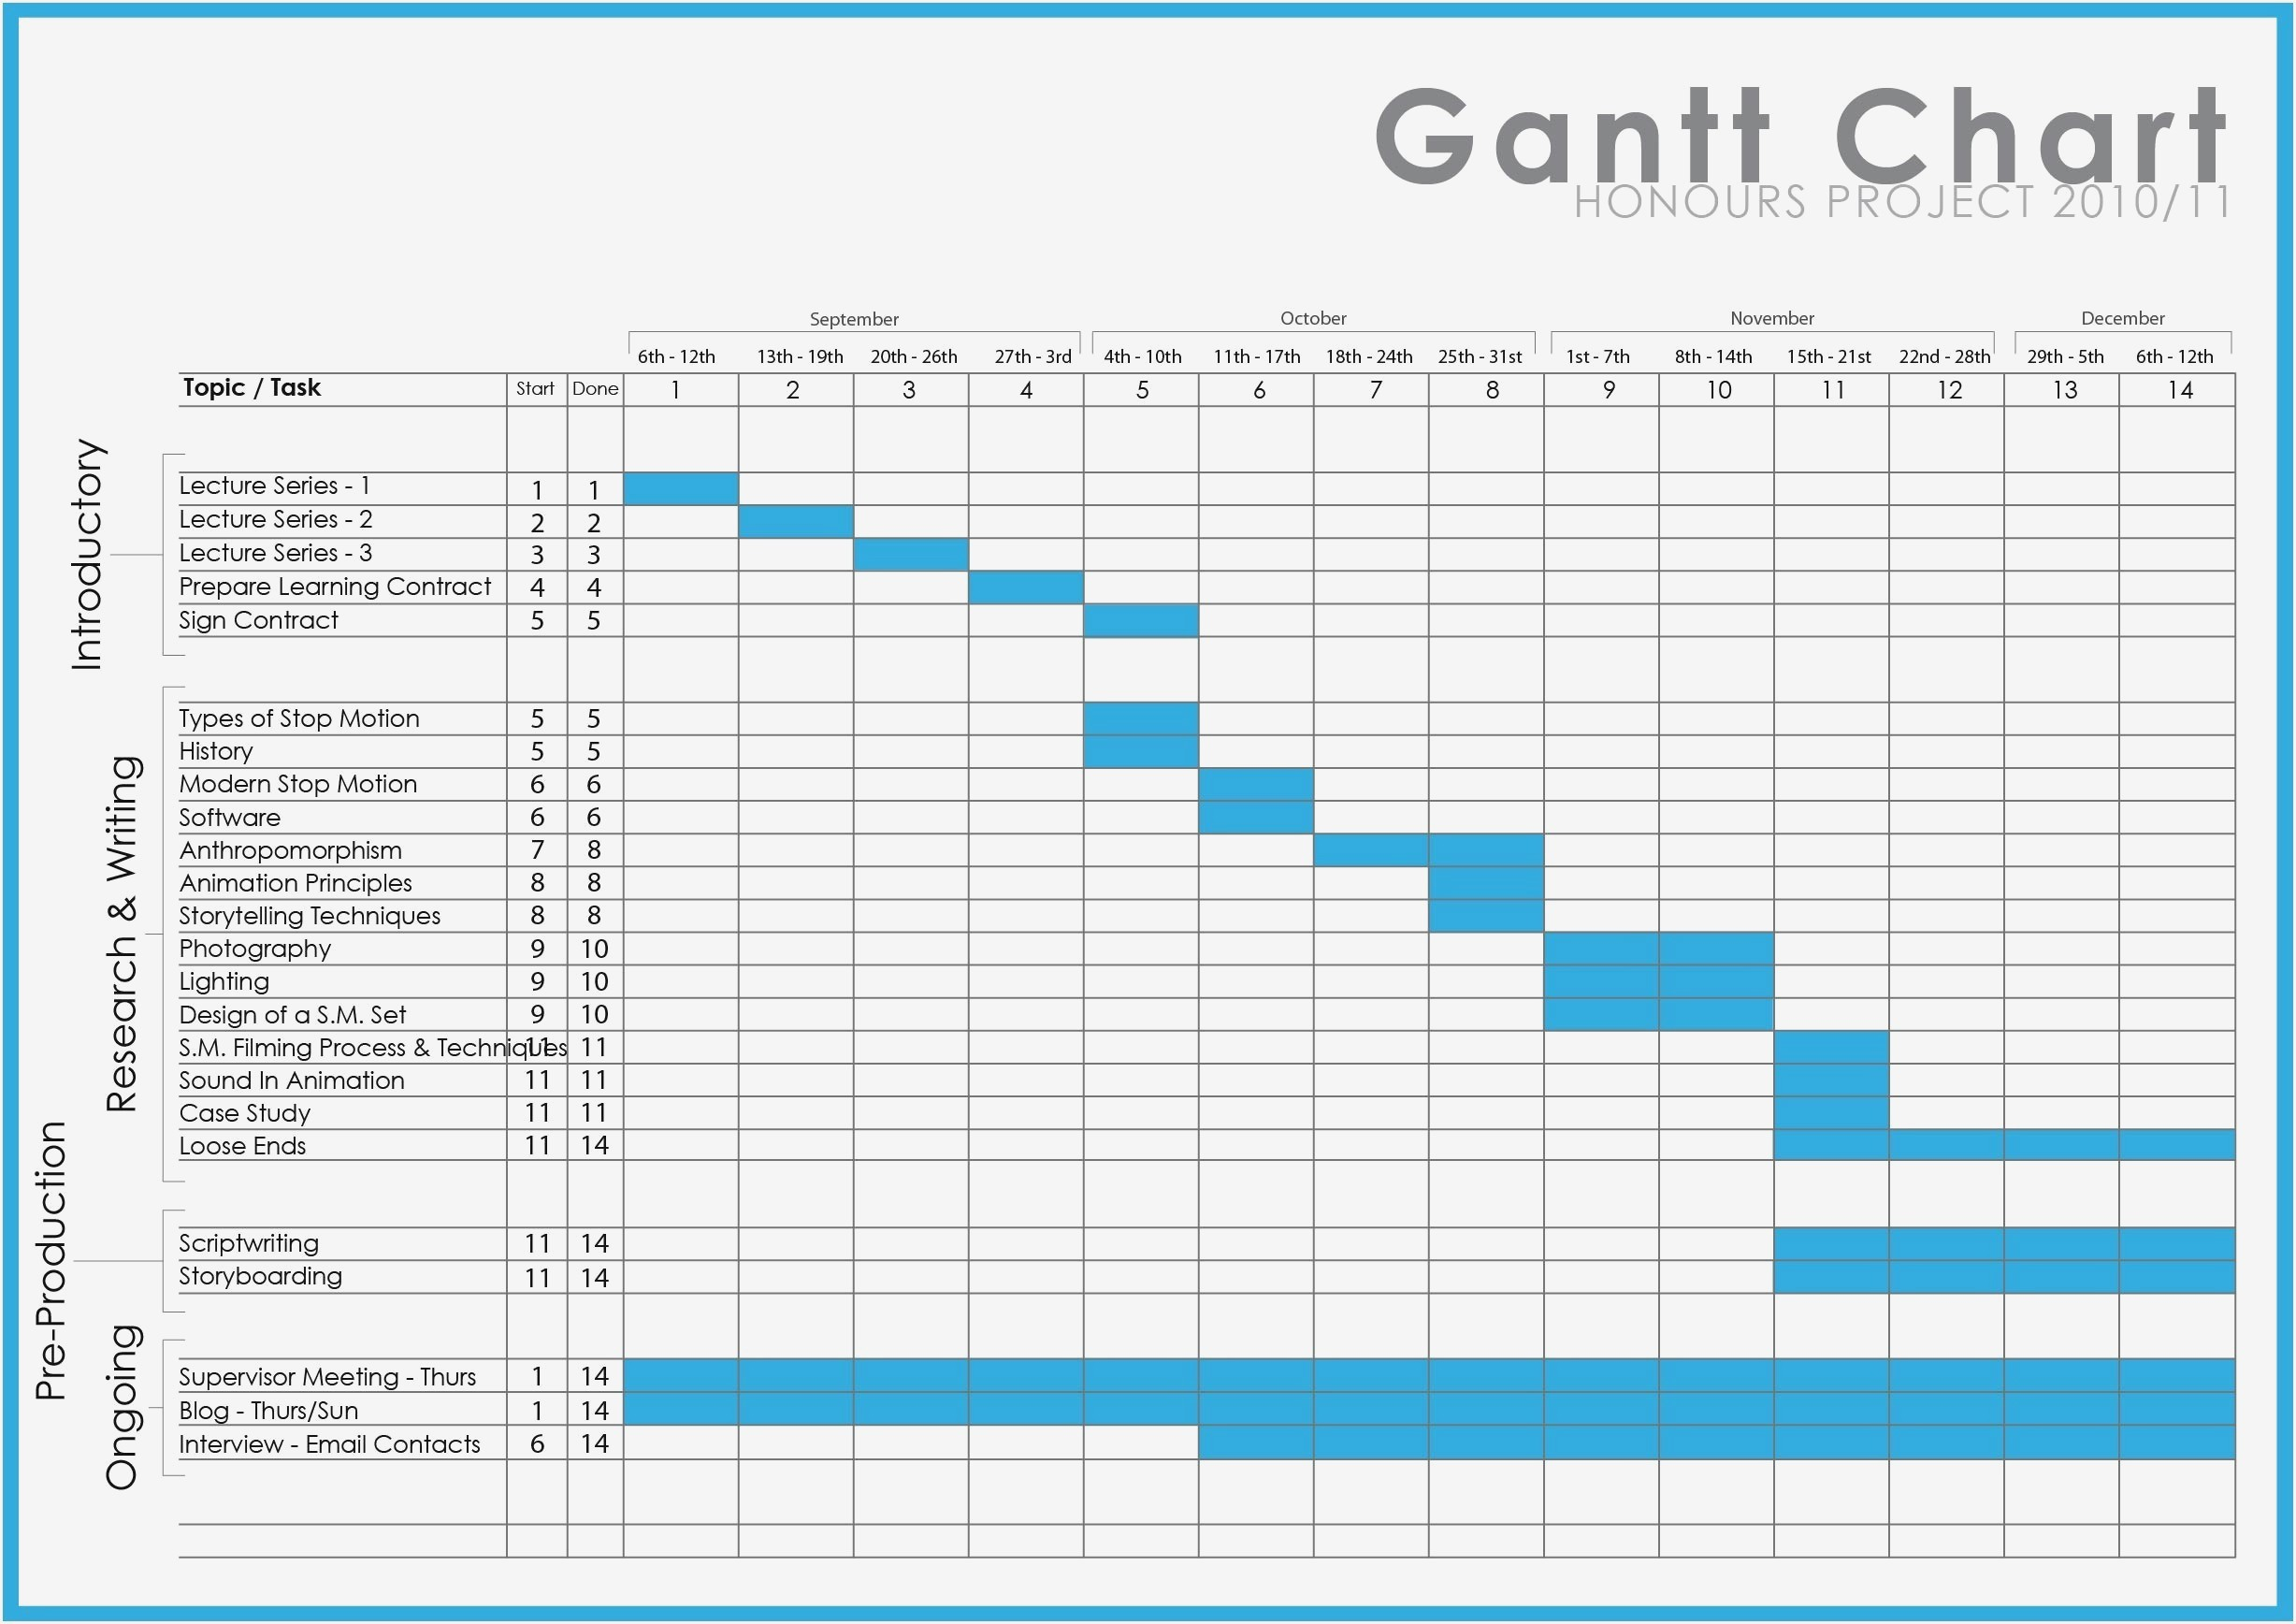 Gantt Chart Word Template Business Templates Microsoft Office For Throughout Gantt Chart Template Microsoft Office